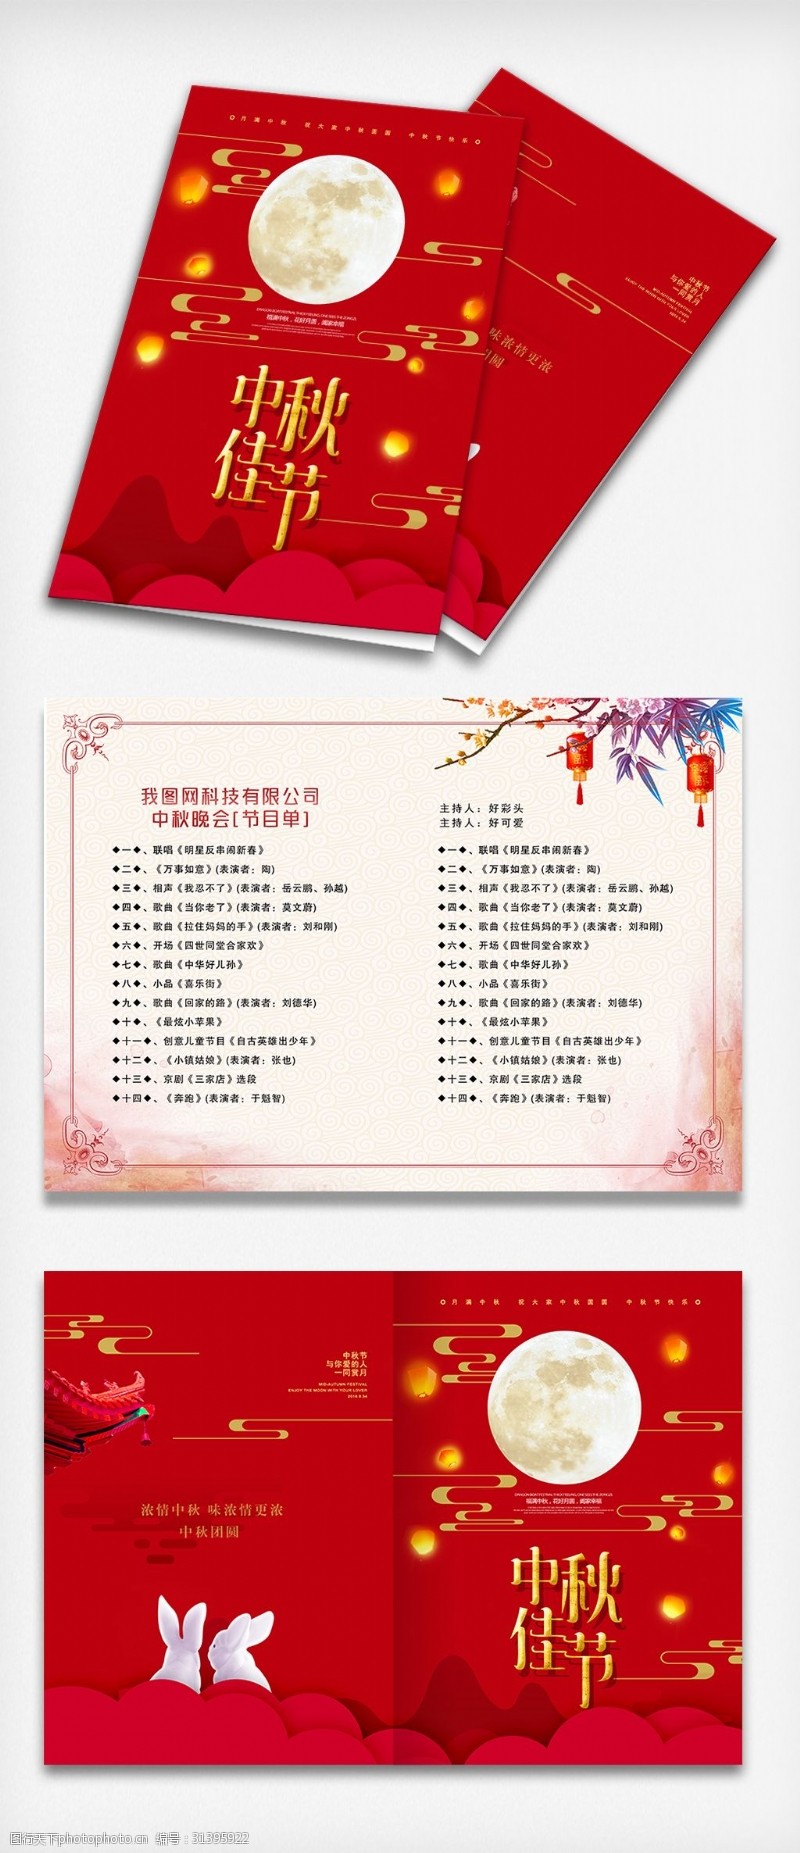 节目单素材下载中秋节红色大气简洁晚会节目单